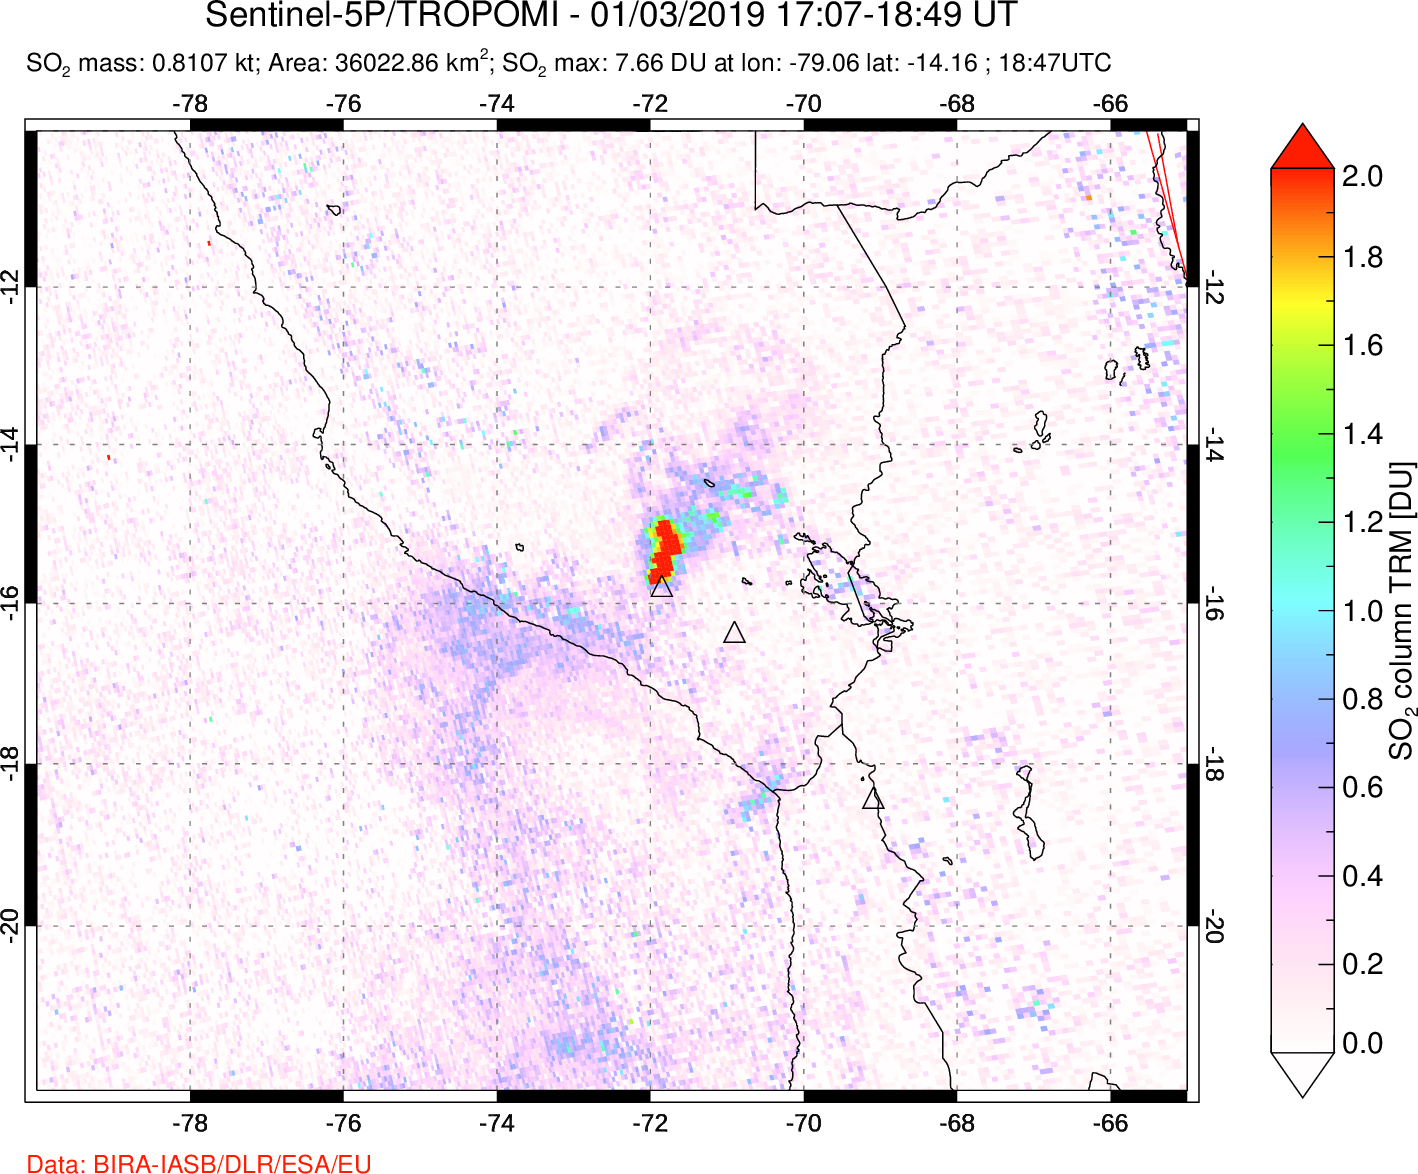 A sulfur dioxide image over Peru on Jan 03, 2019.